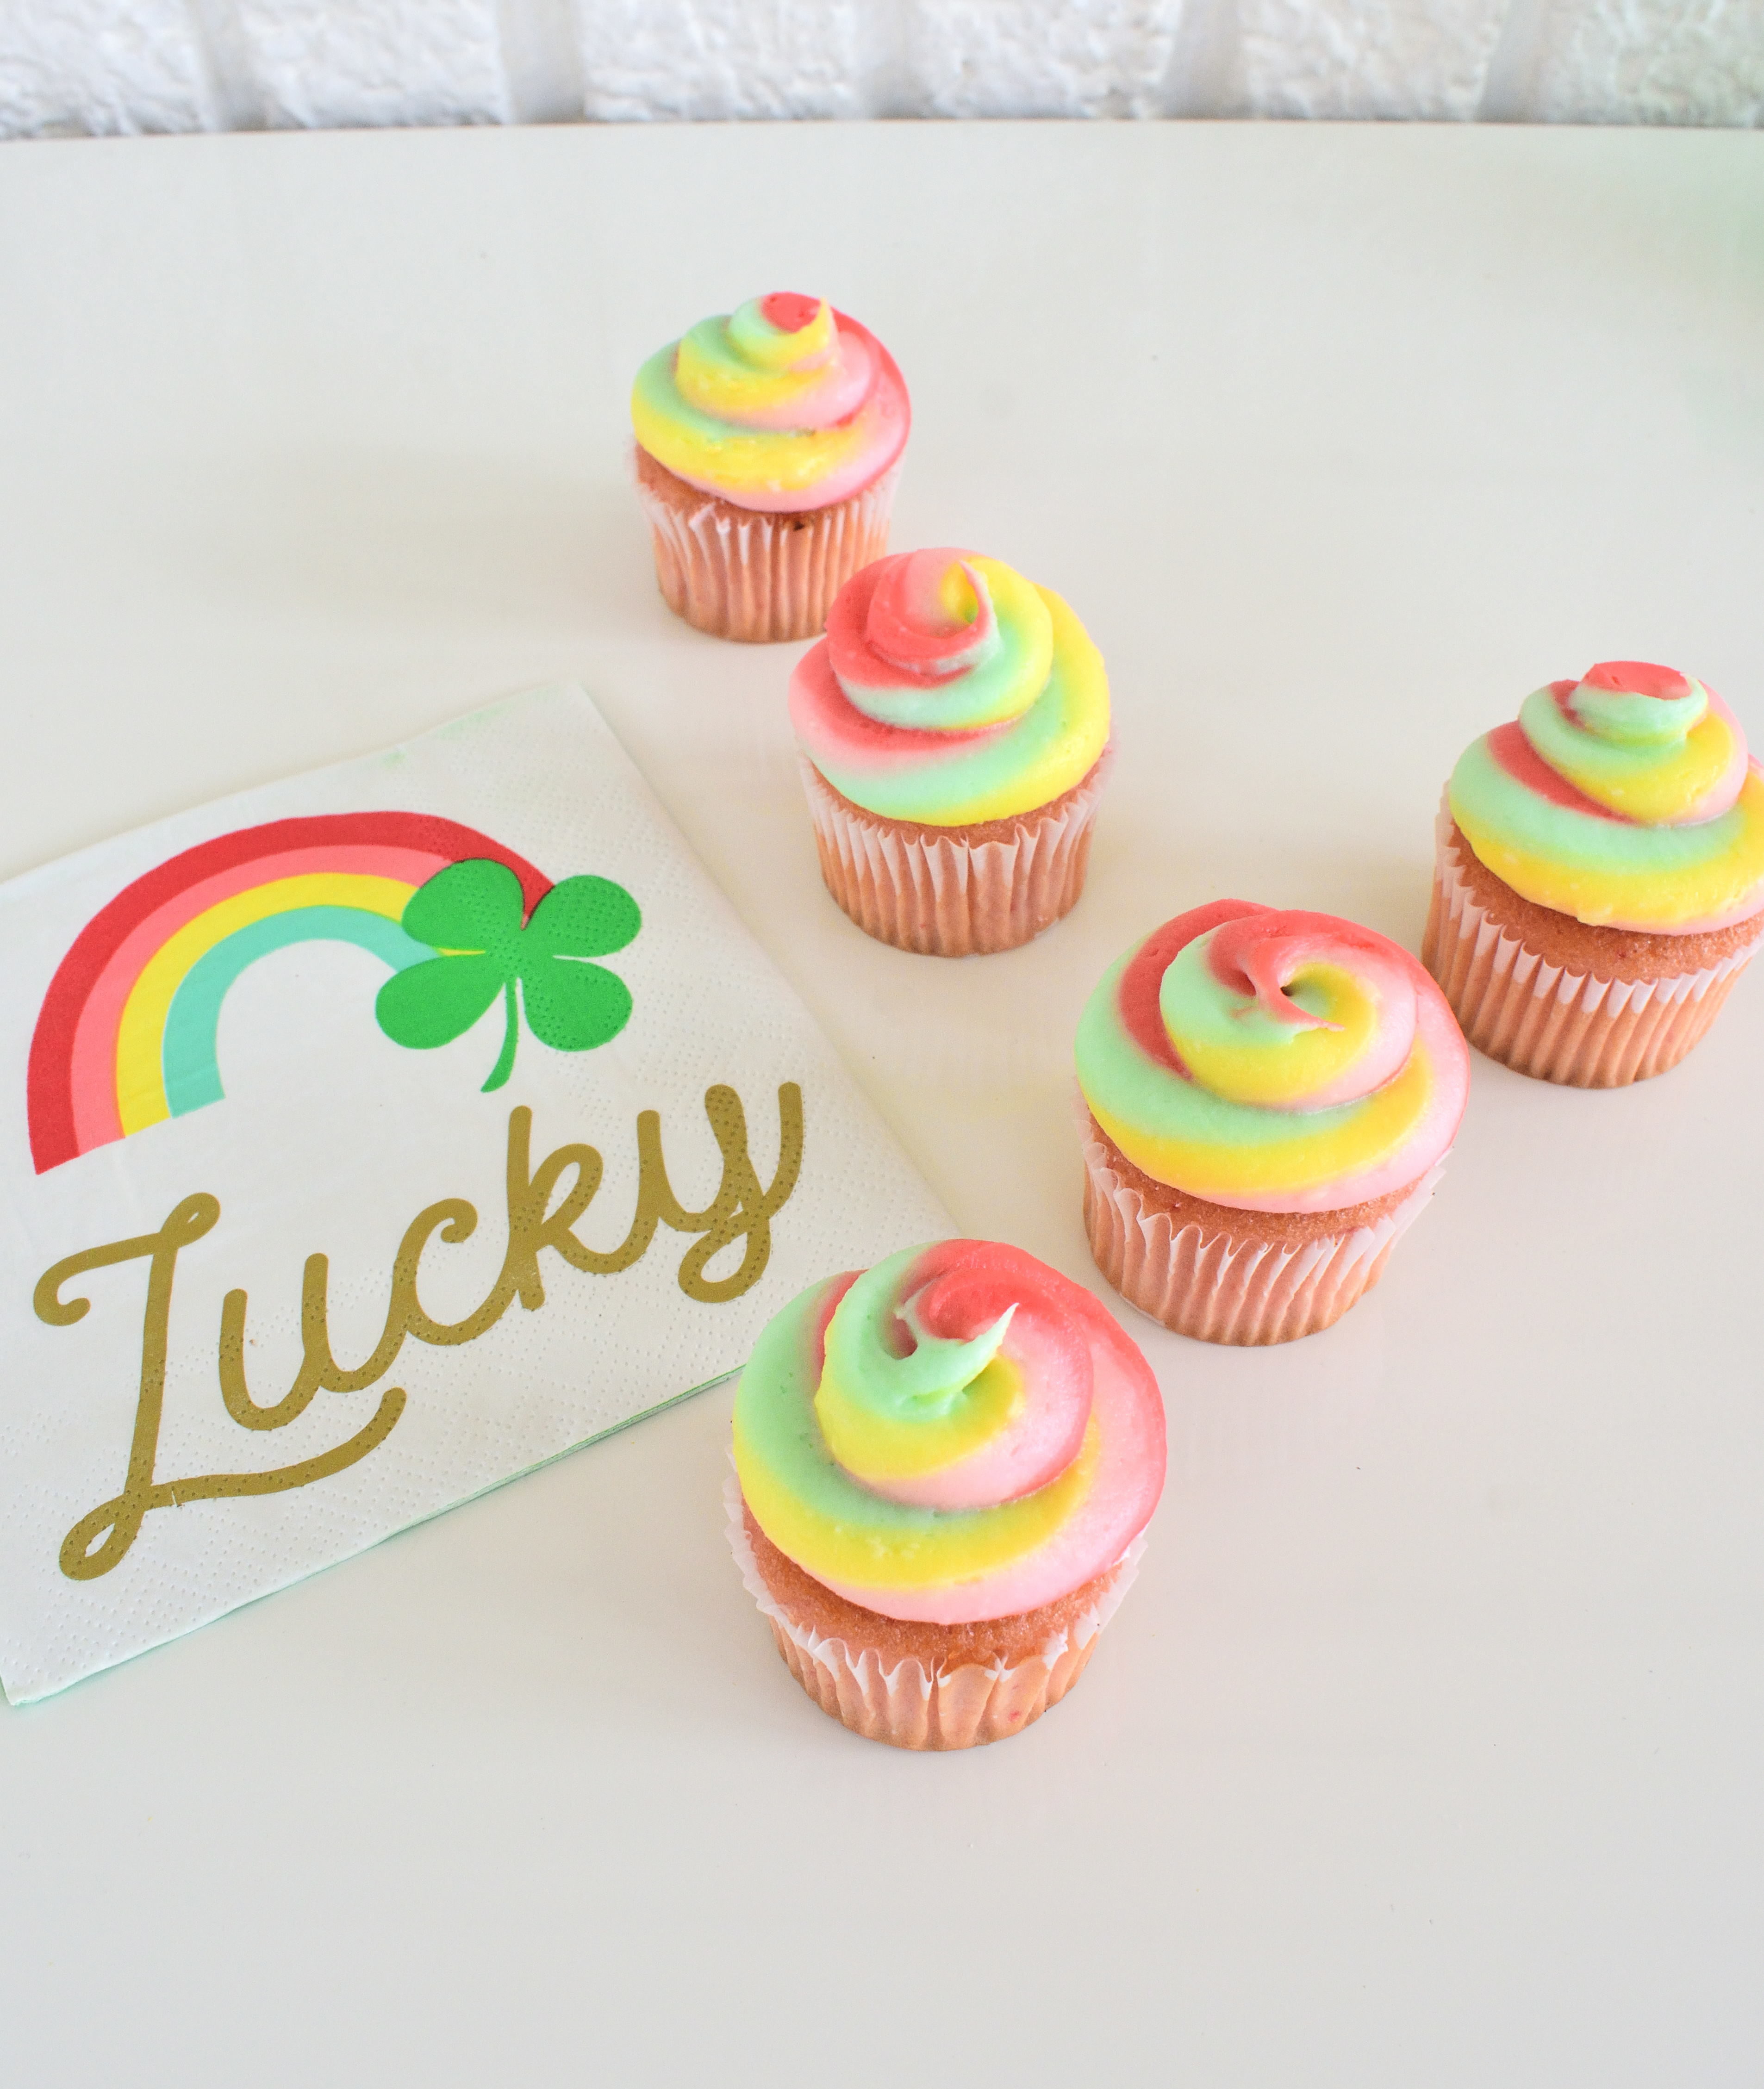 St. Patrick's Day treats/rainbow cupcakes